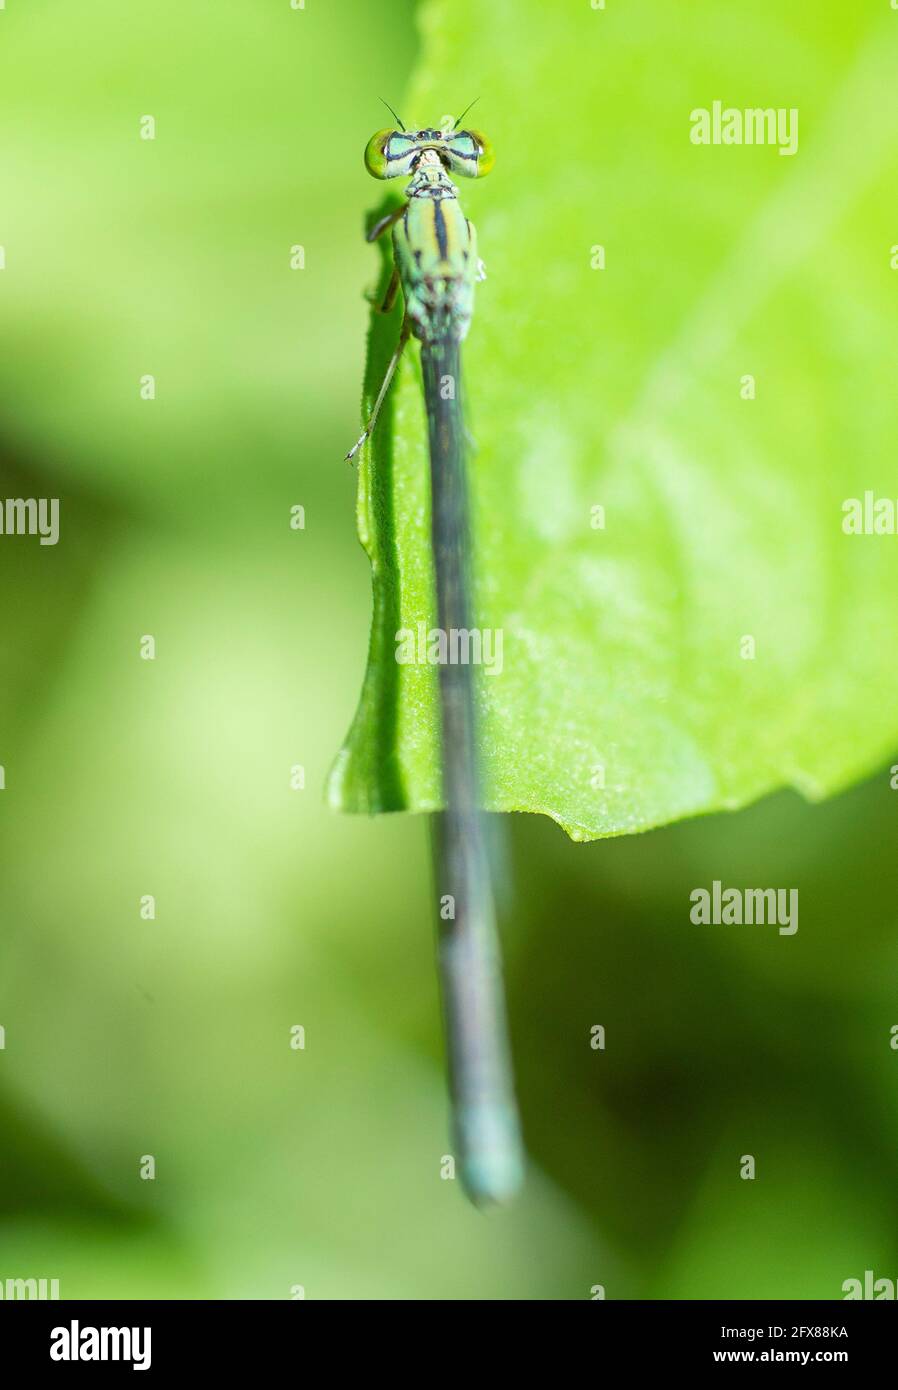 Primer plano macro detalle de cola pequeña libélula onychogomphus forcpata encendido hoja verde en el jardín Foto de stock